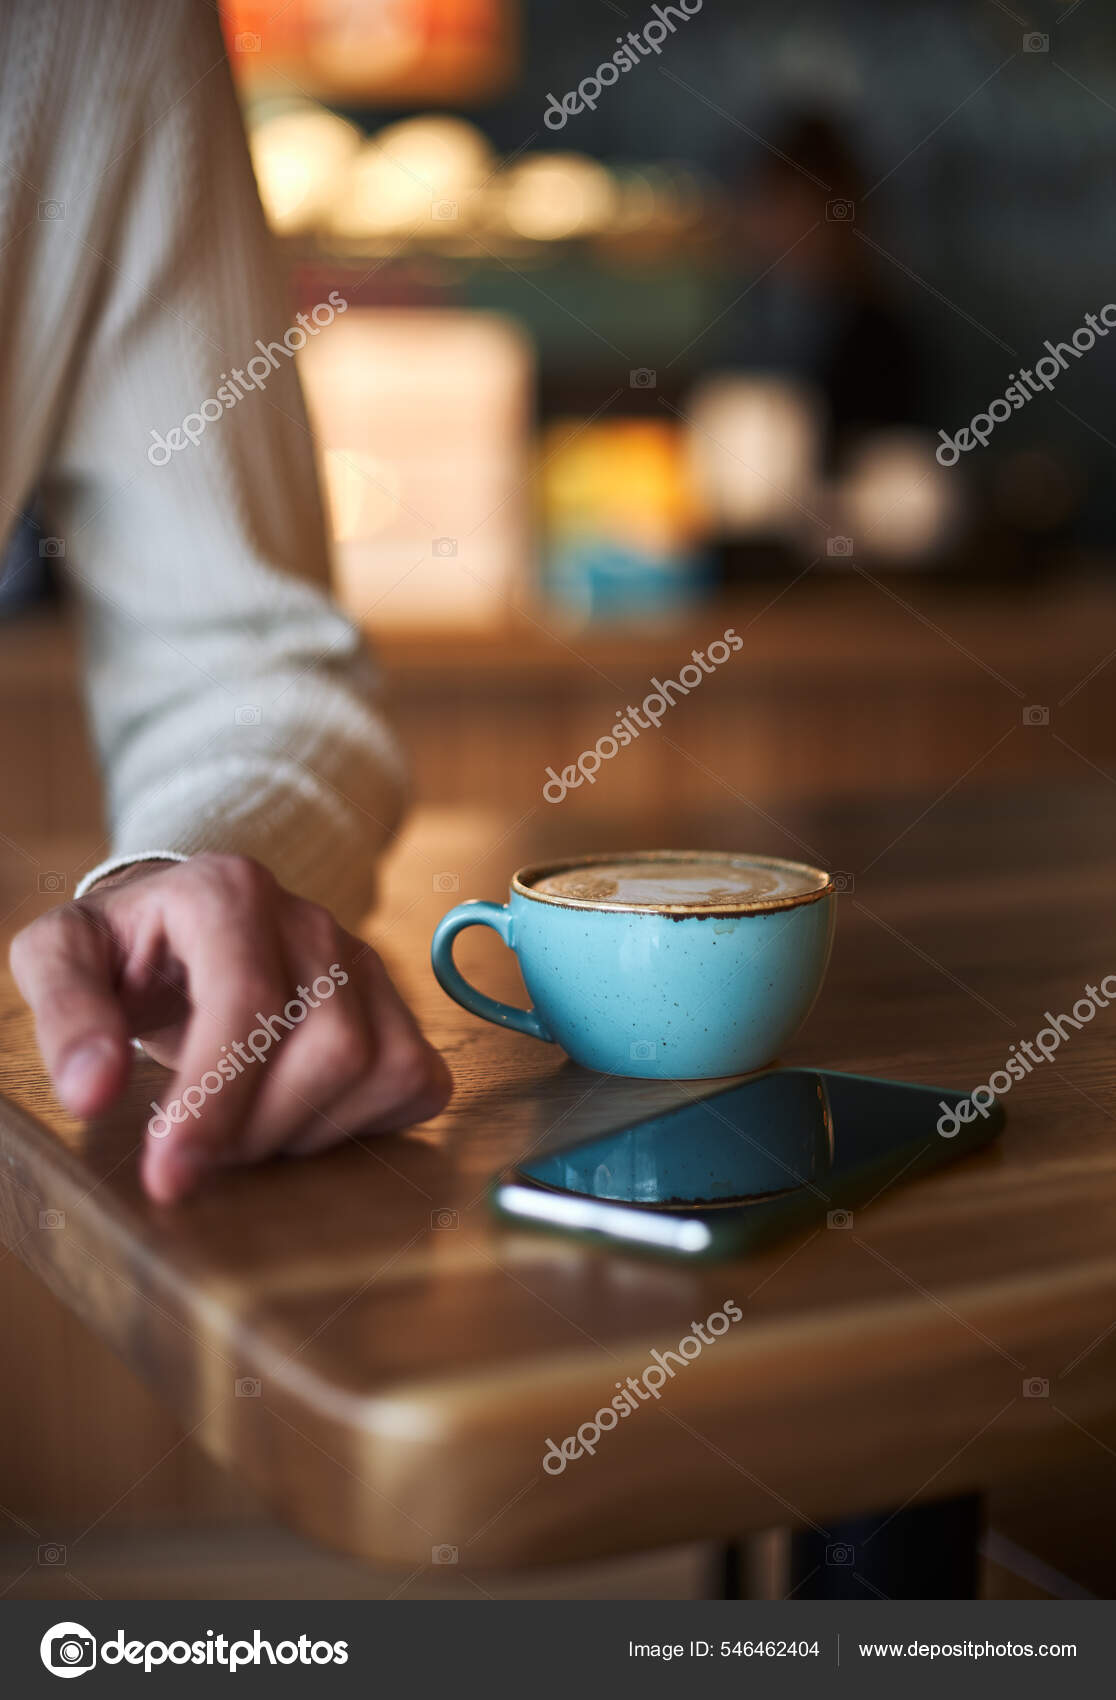 Dos Tazas Café Con Leche Azul En La Mesa De Madera. Hombres Adultos Manos  Smartphone. Enfoque Selectivo. Vertical. Fotos, retratos, imágenes y  fotografía de archivo libres de derecho. Image 97622958